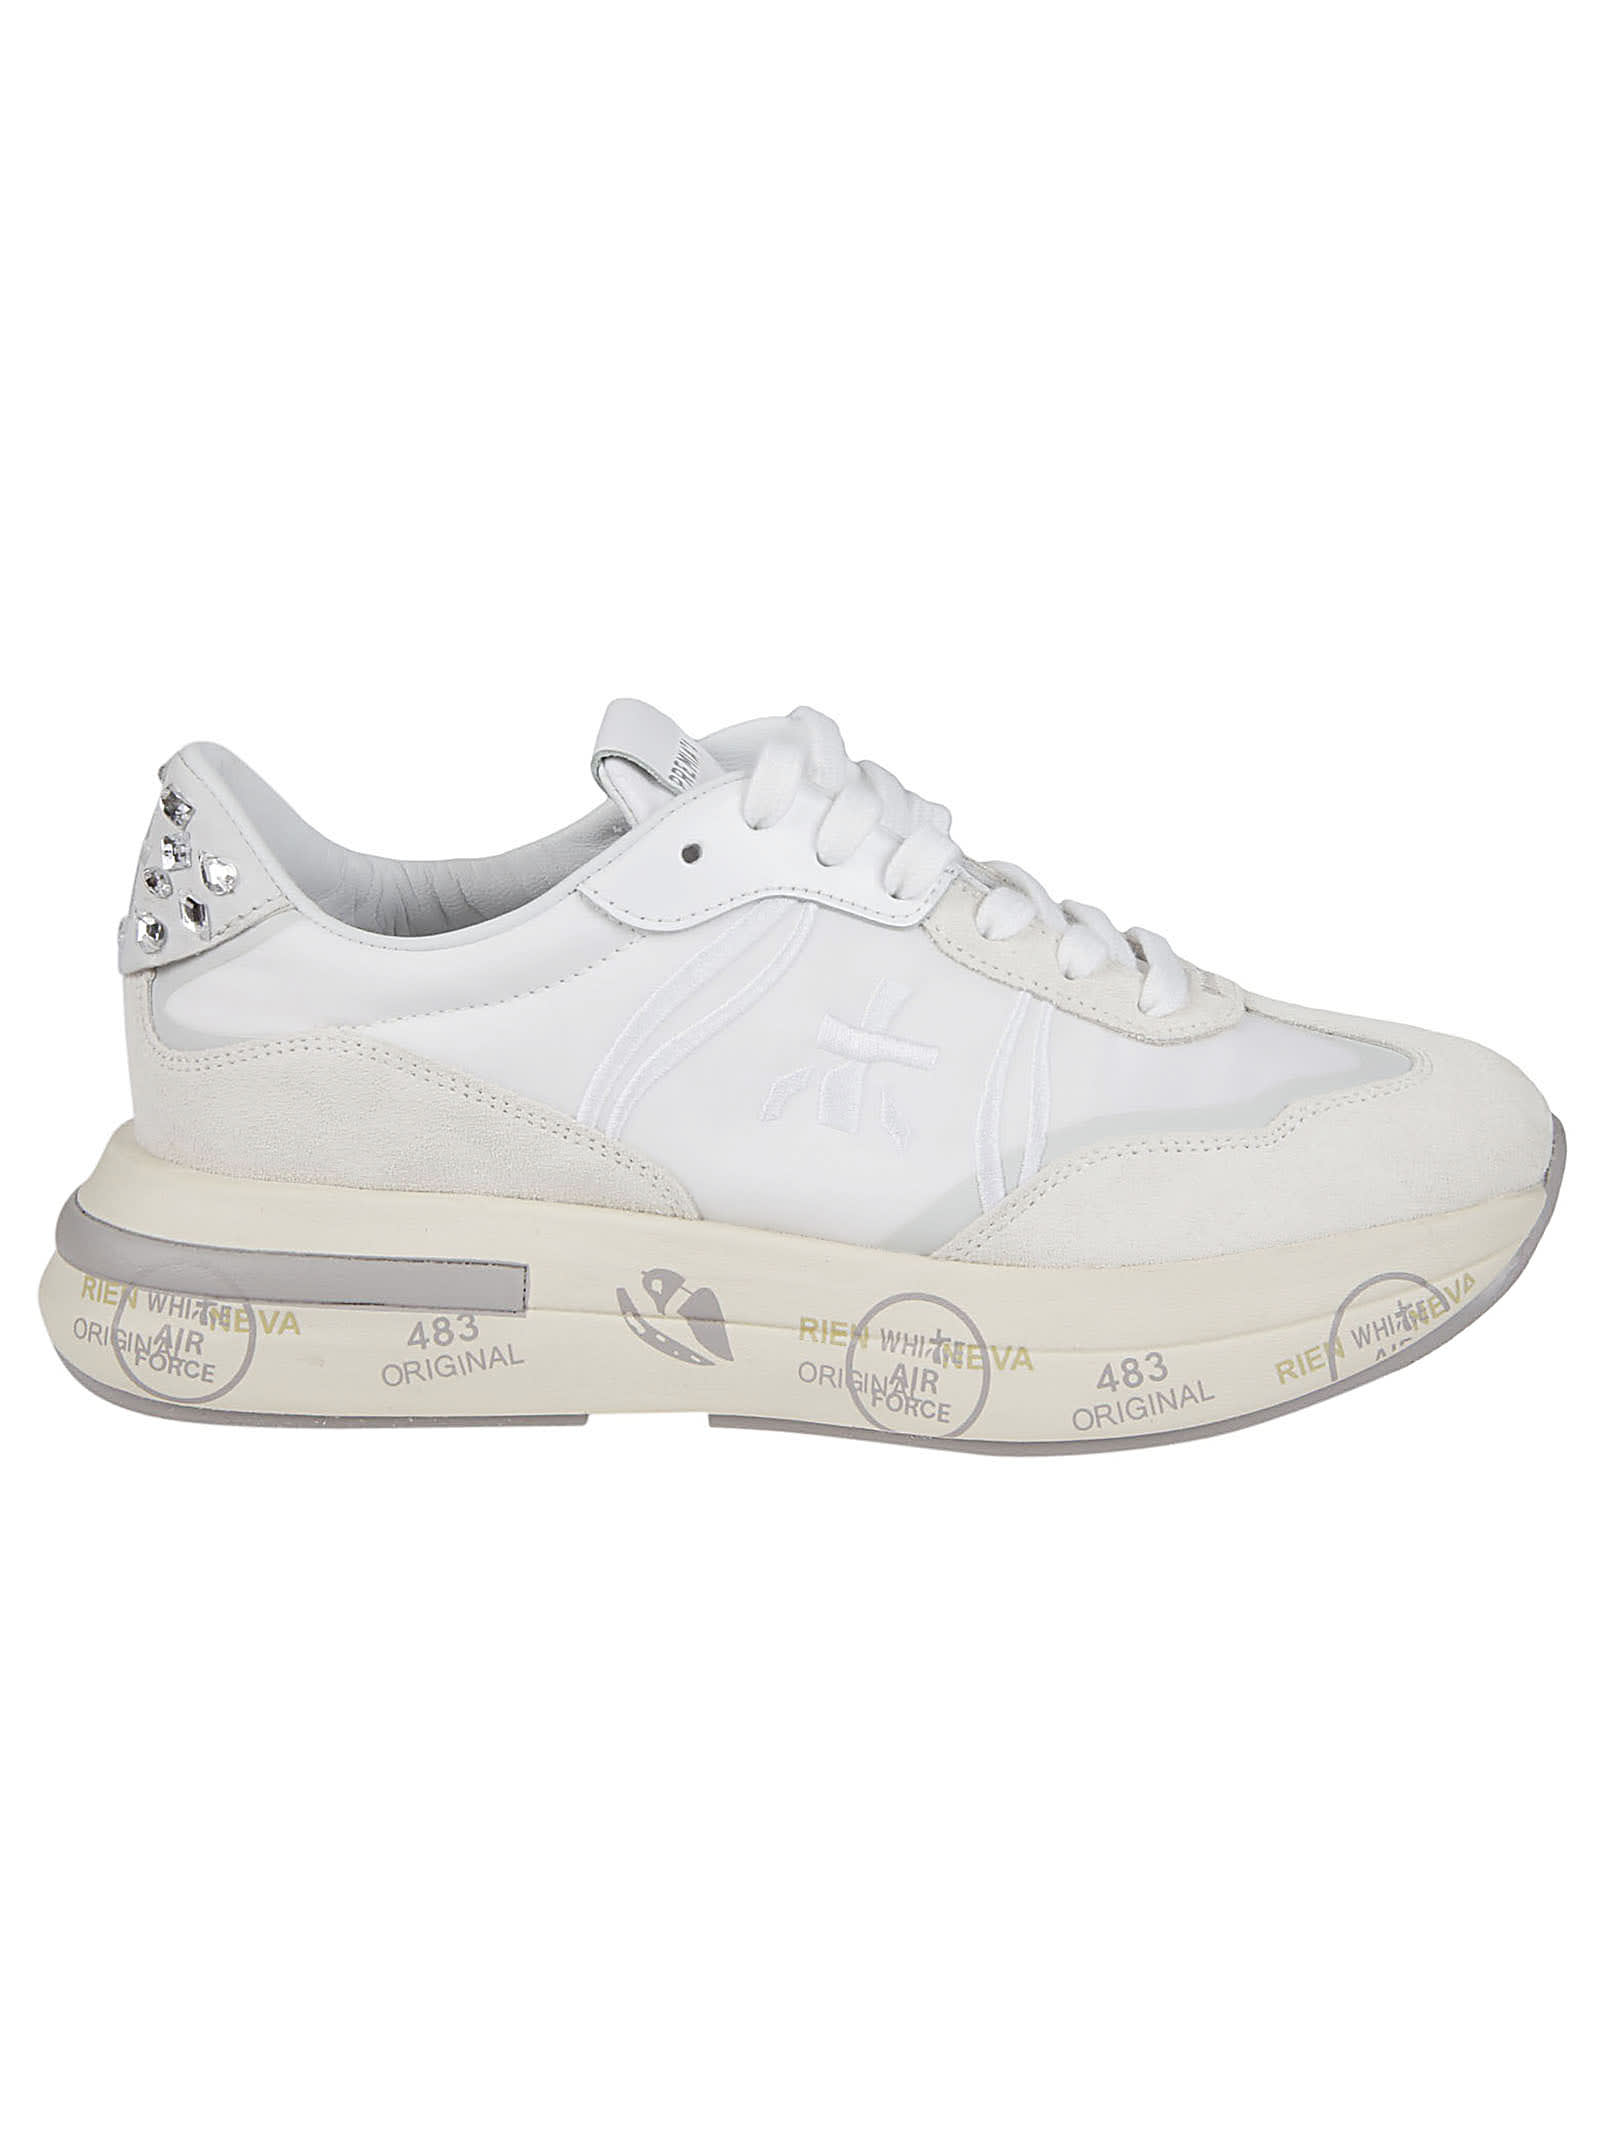 Premiata Cassie Sneakers In White